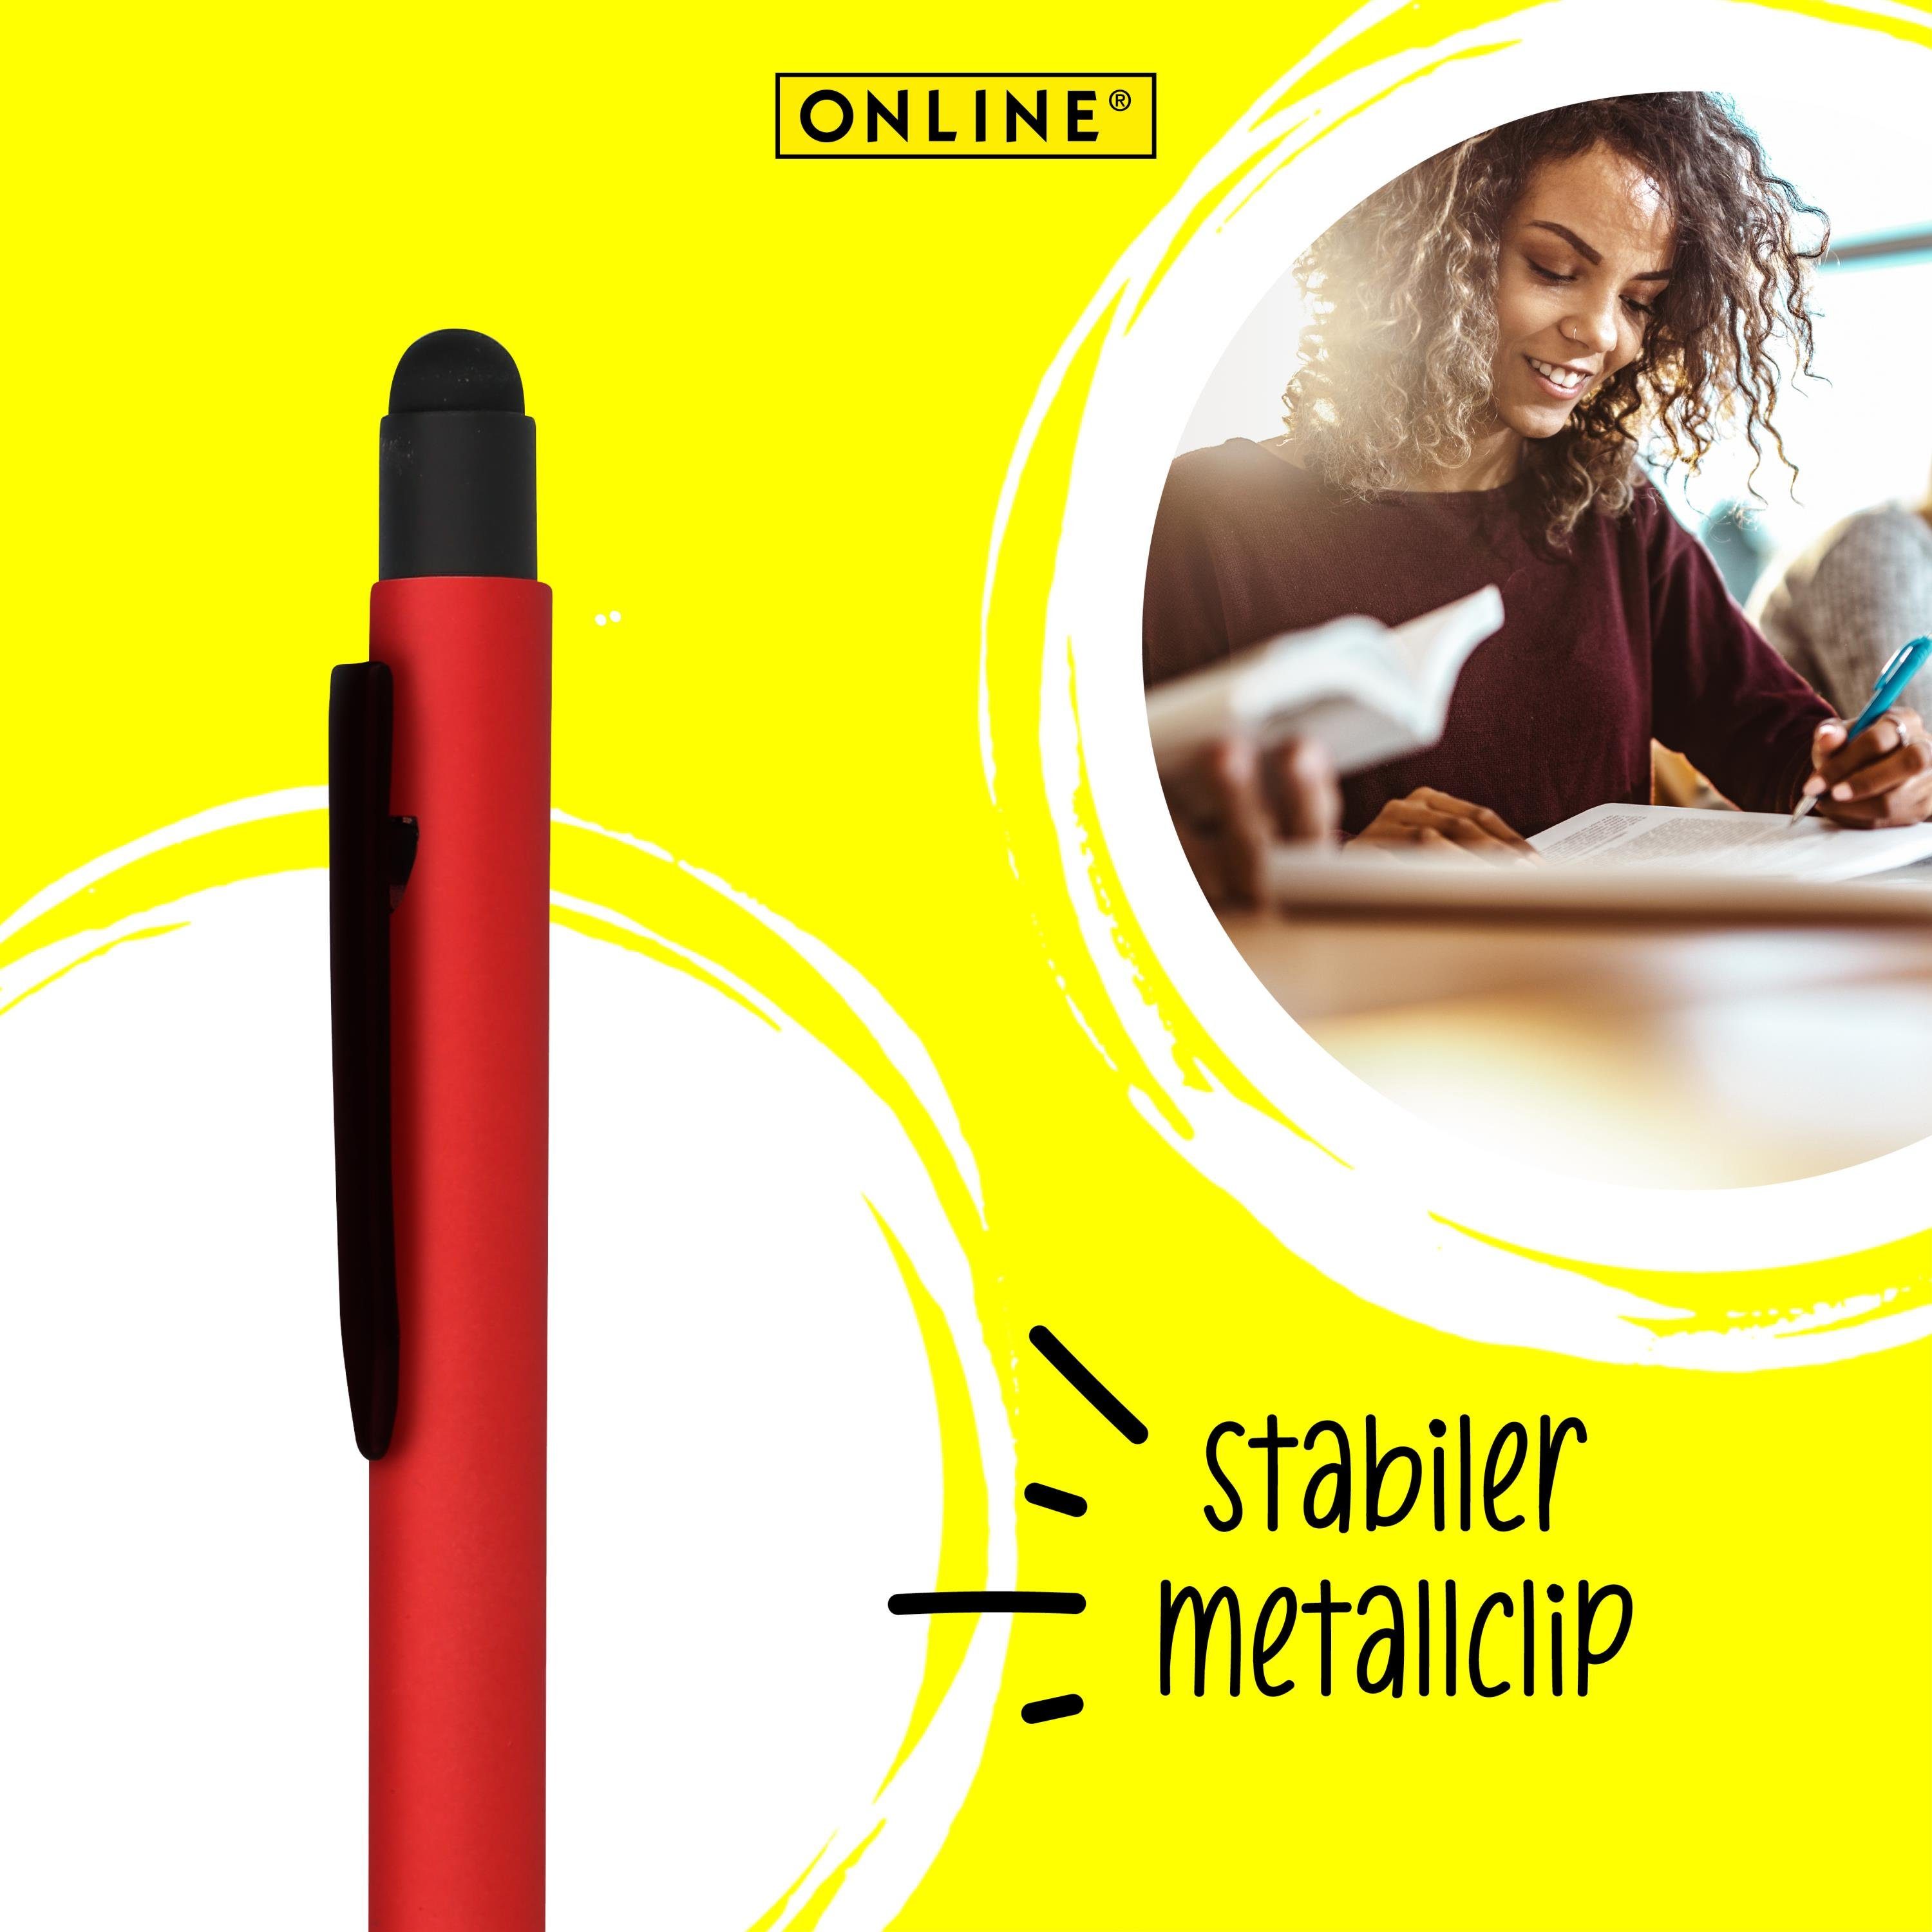 Online Pen Kugelschreiber Alu Stylus Druckkugelschreiber, Red Multimedia-Geräte Stylus-Tip für